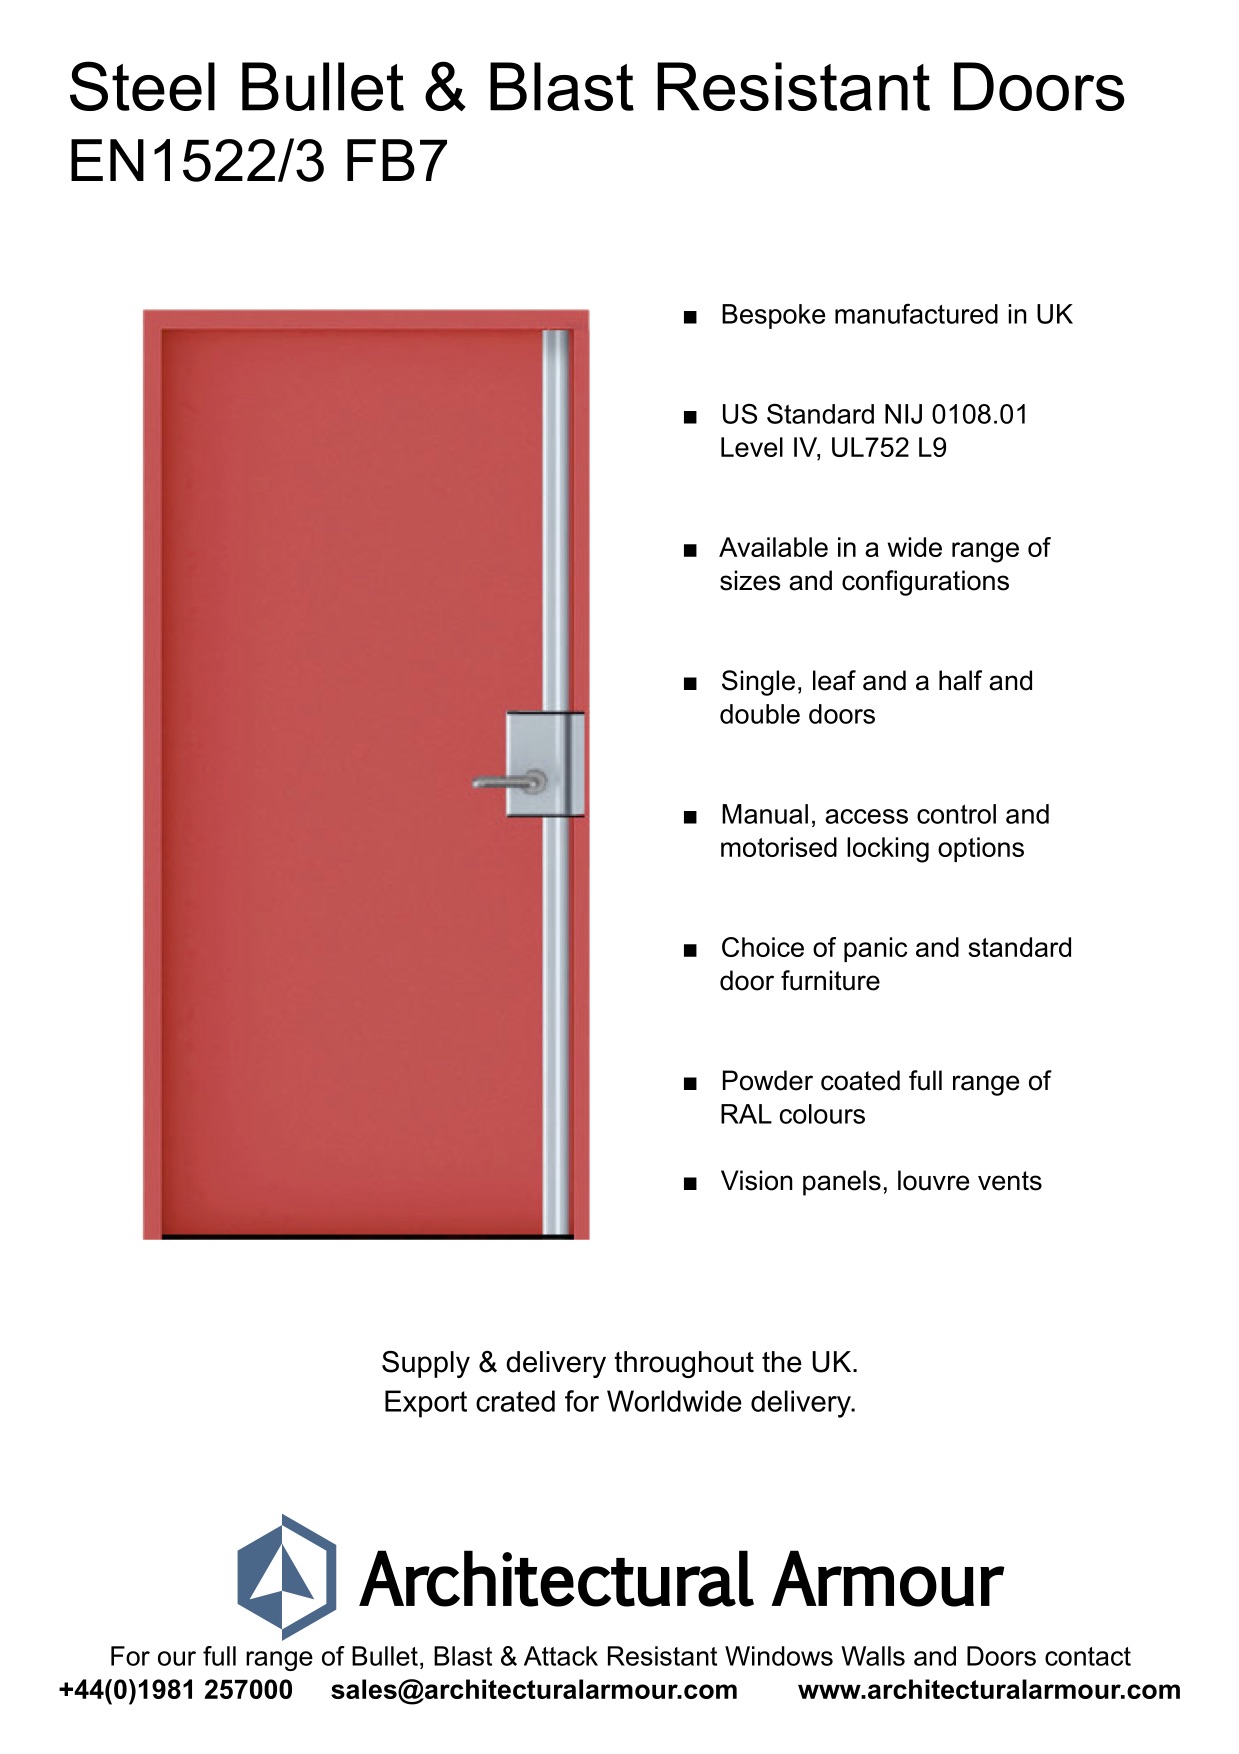 Blast-and-Bullet-Resistant-Steel-Door-UK-EN1522-3-FB7